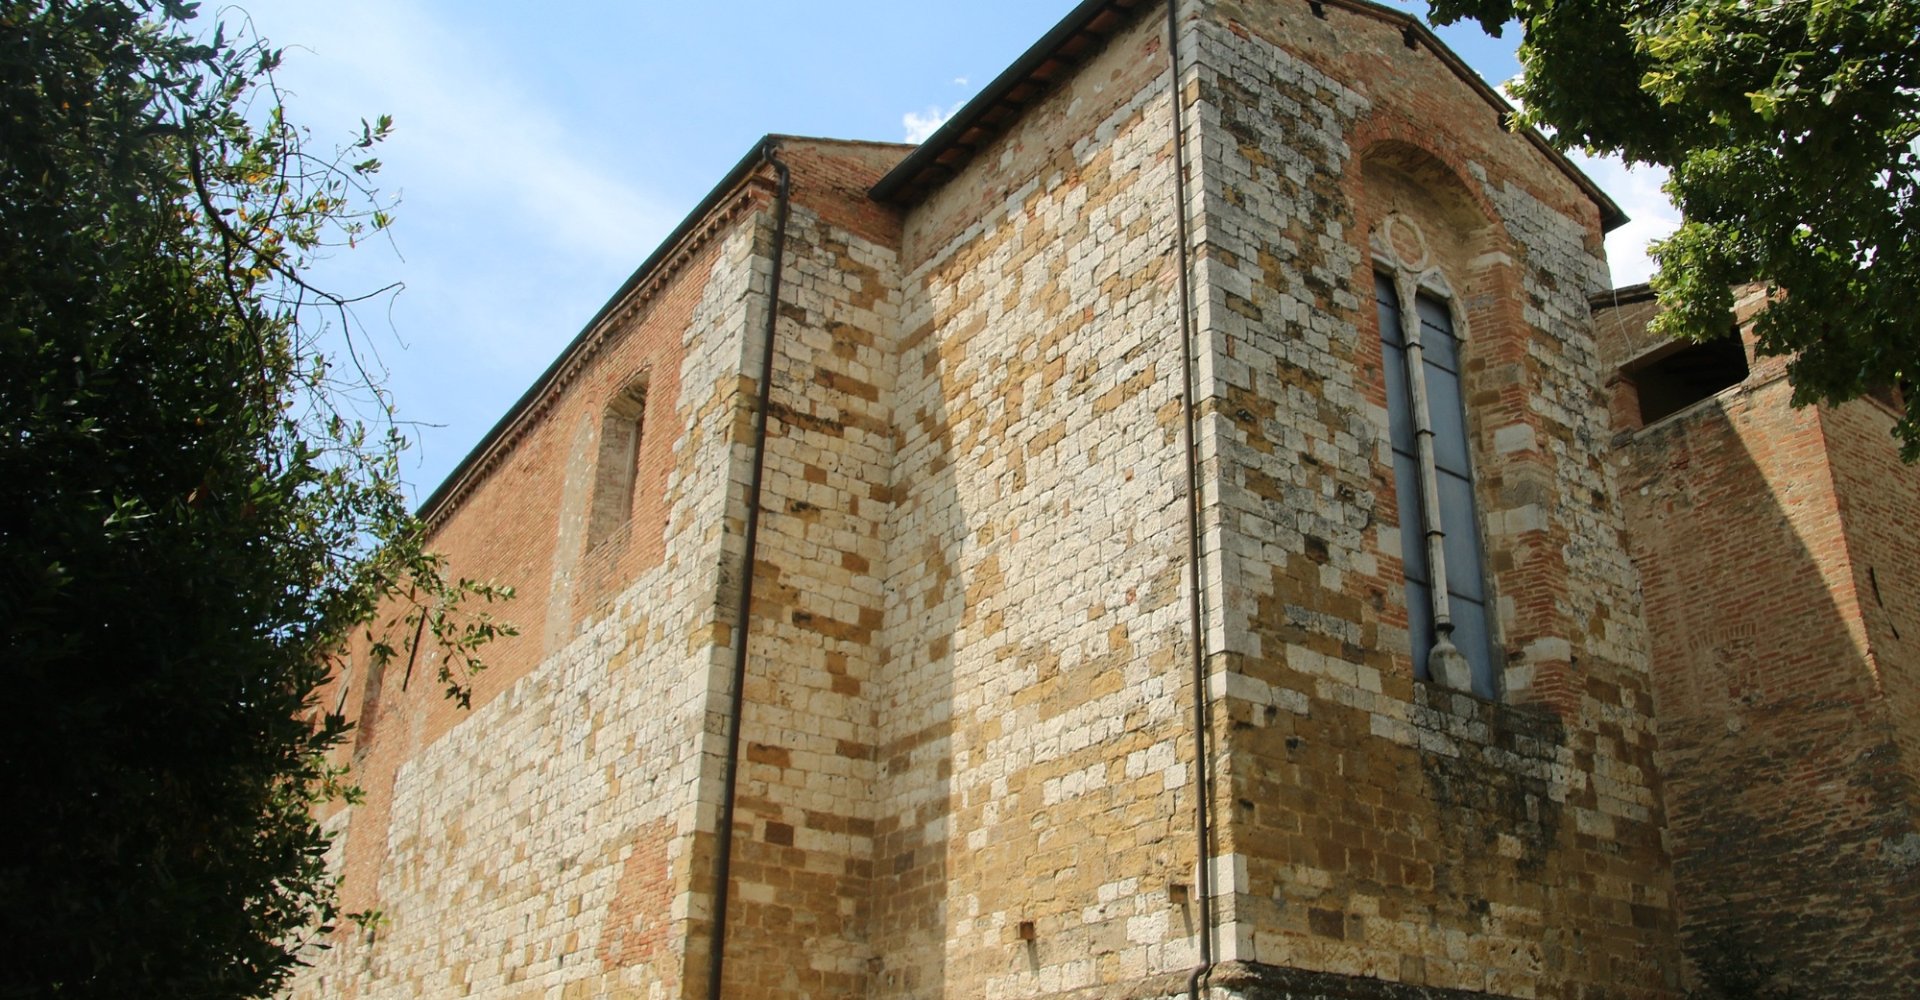 Convento di San Francesco, Colle di Val d’Elsa